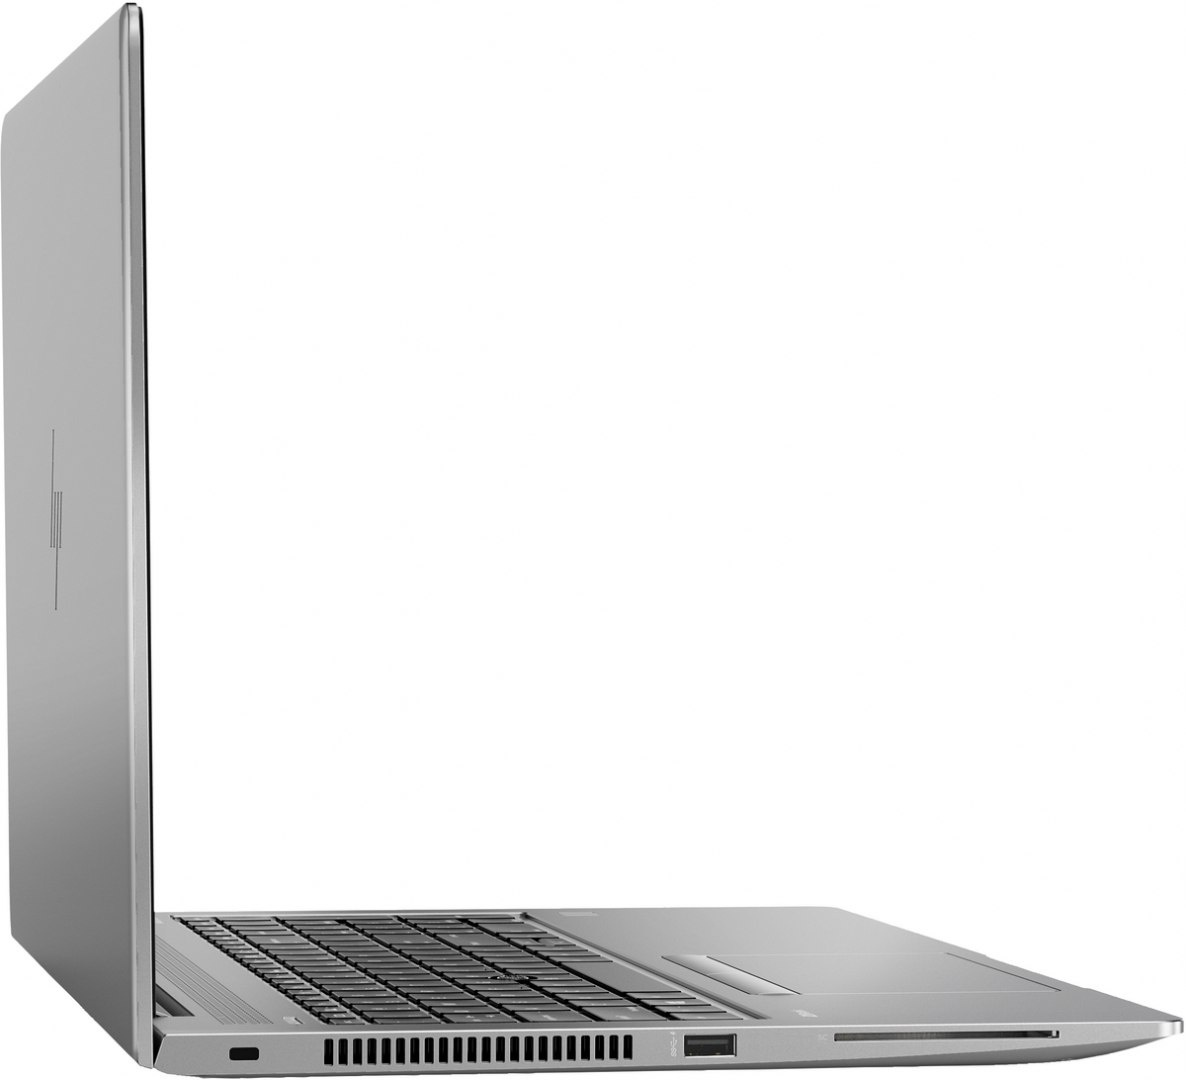 Dotykowy HP ZBook 15u G6 FullHD IPS Intel Core i7-8565U Quad 16GB DDR4 512GB SSD NVMe AMD Radeon Pro WX 3200 4GB VRAM Win10 Pro